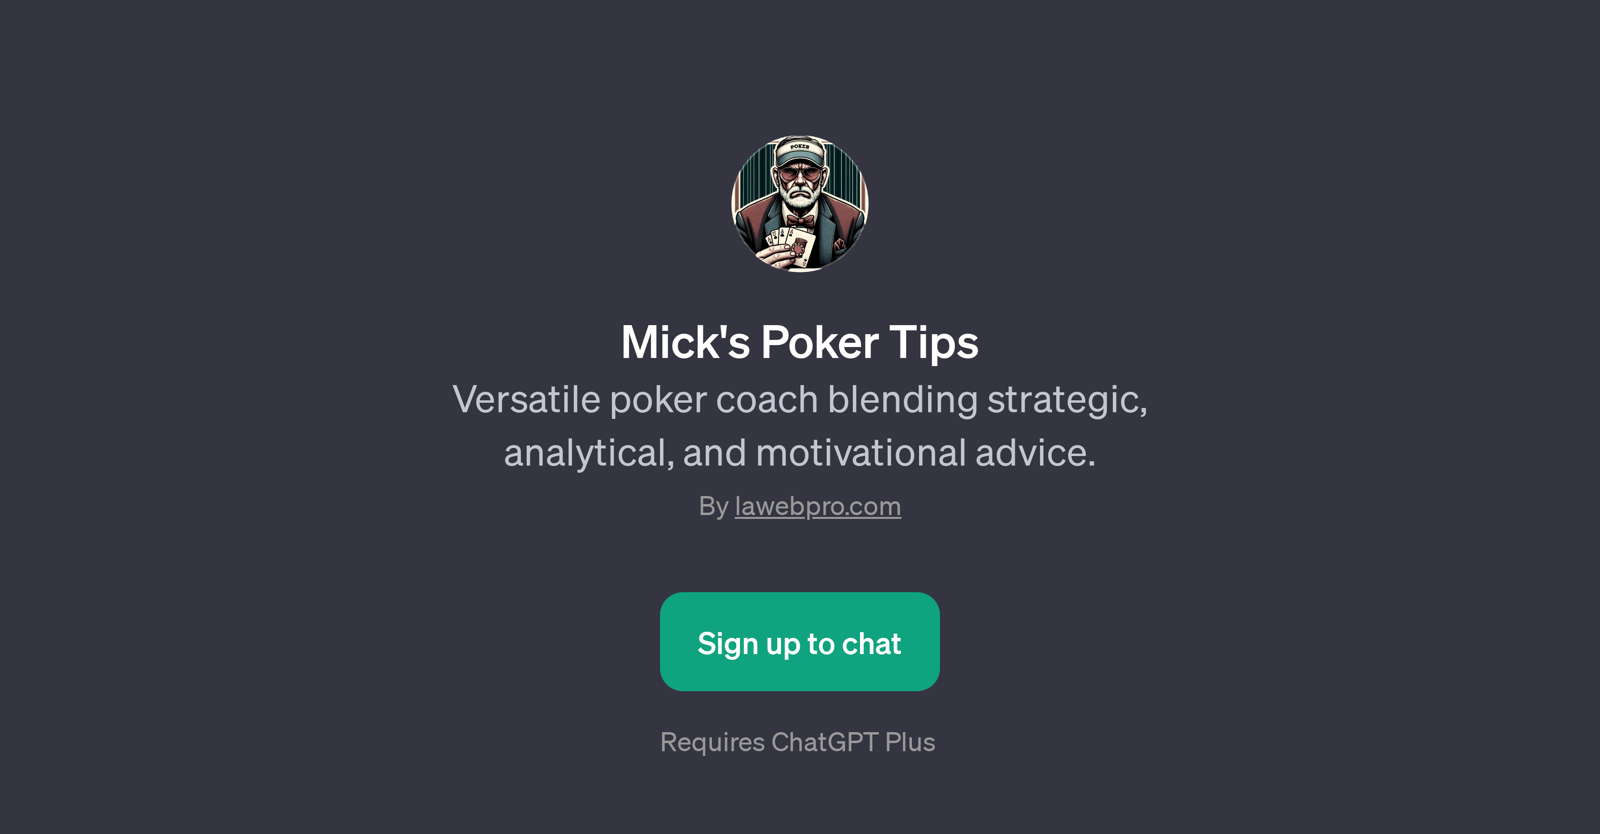 Mick's Poker Tips website